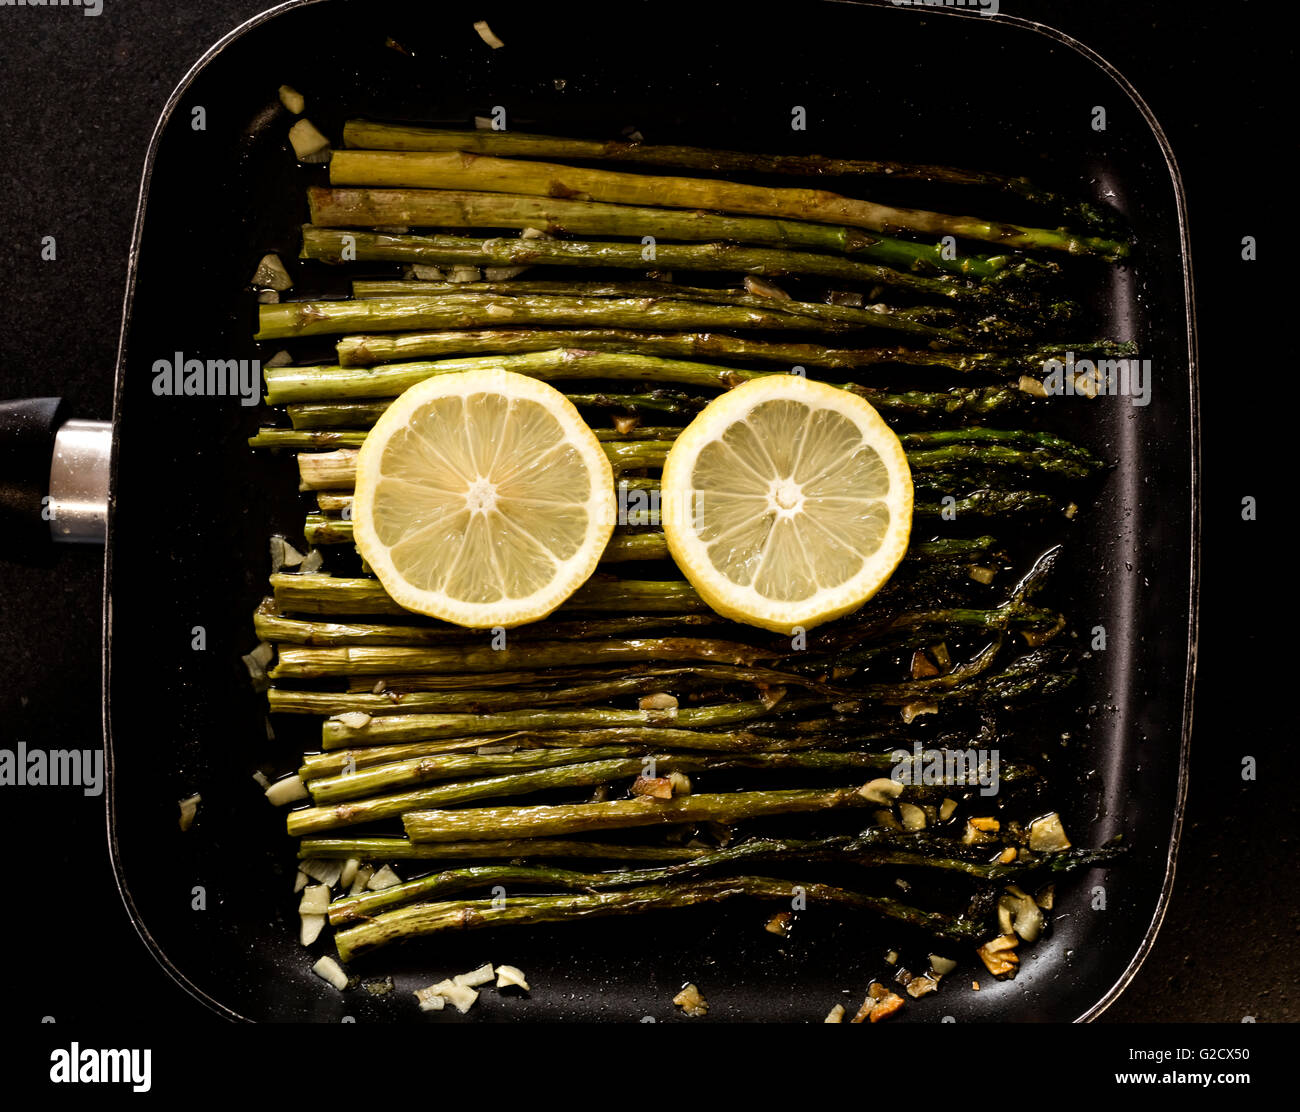 Recette asperges sauvages à l'ail et le citron dans une casserole juste pour manger Banque D'Images